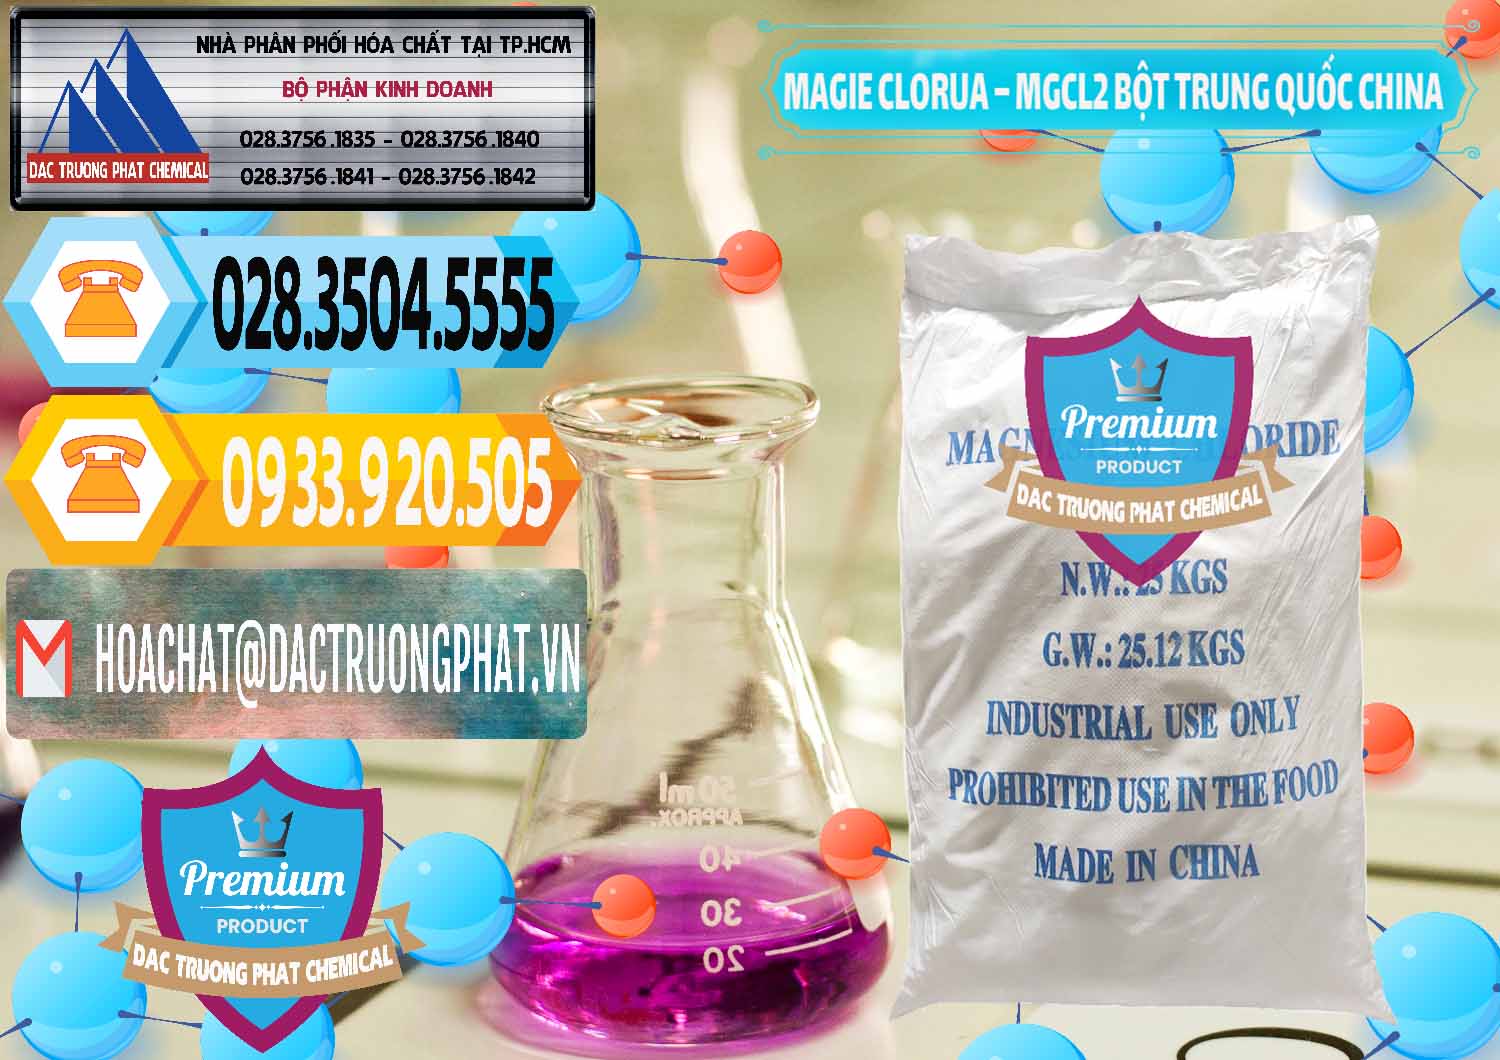 Công ty nhập khẩu - bán Magie Clorua – MGCL2 96% Dạng Bột Bao Chữ Xanh Trung Quốc China - 0207 - Nơi chuyên phân phối _ bán hóa chất tại TP.HCM - hoachattayrua.net